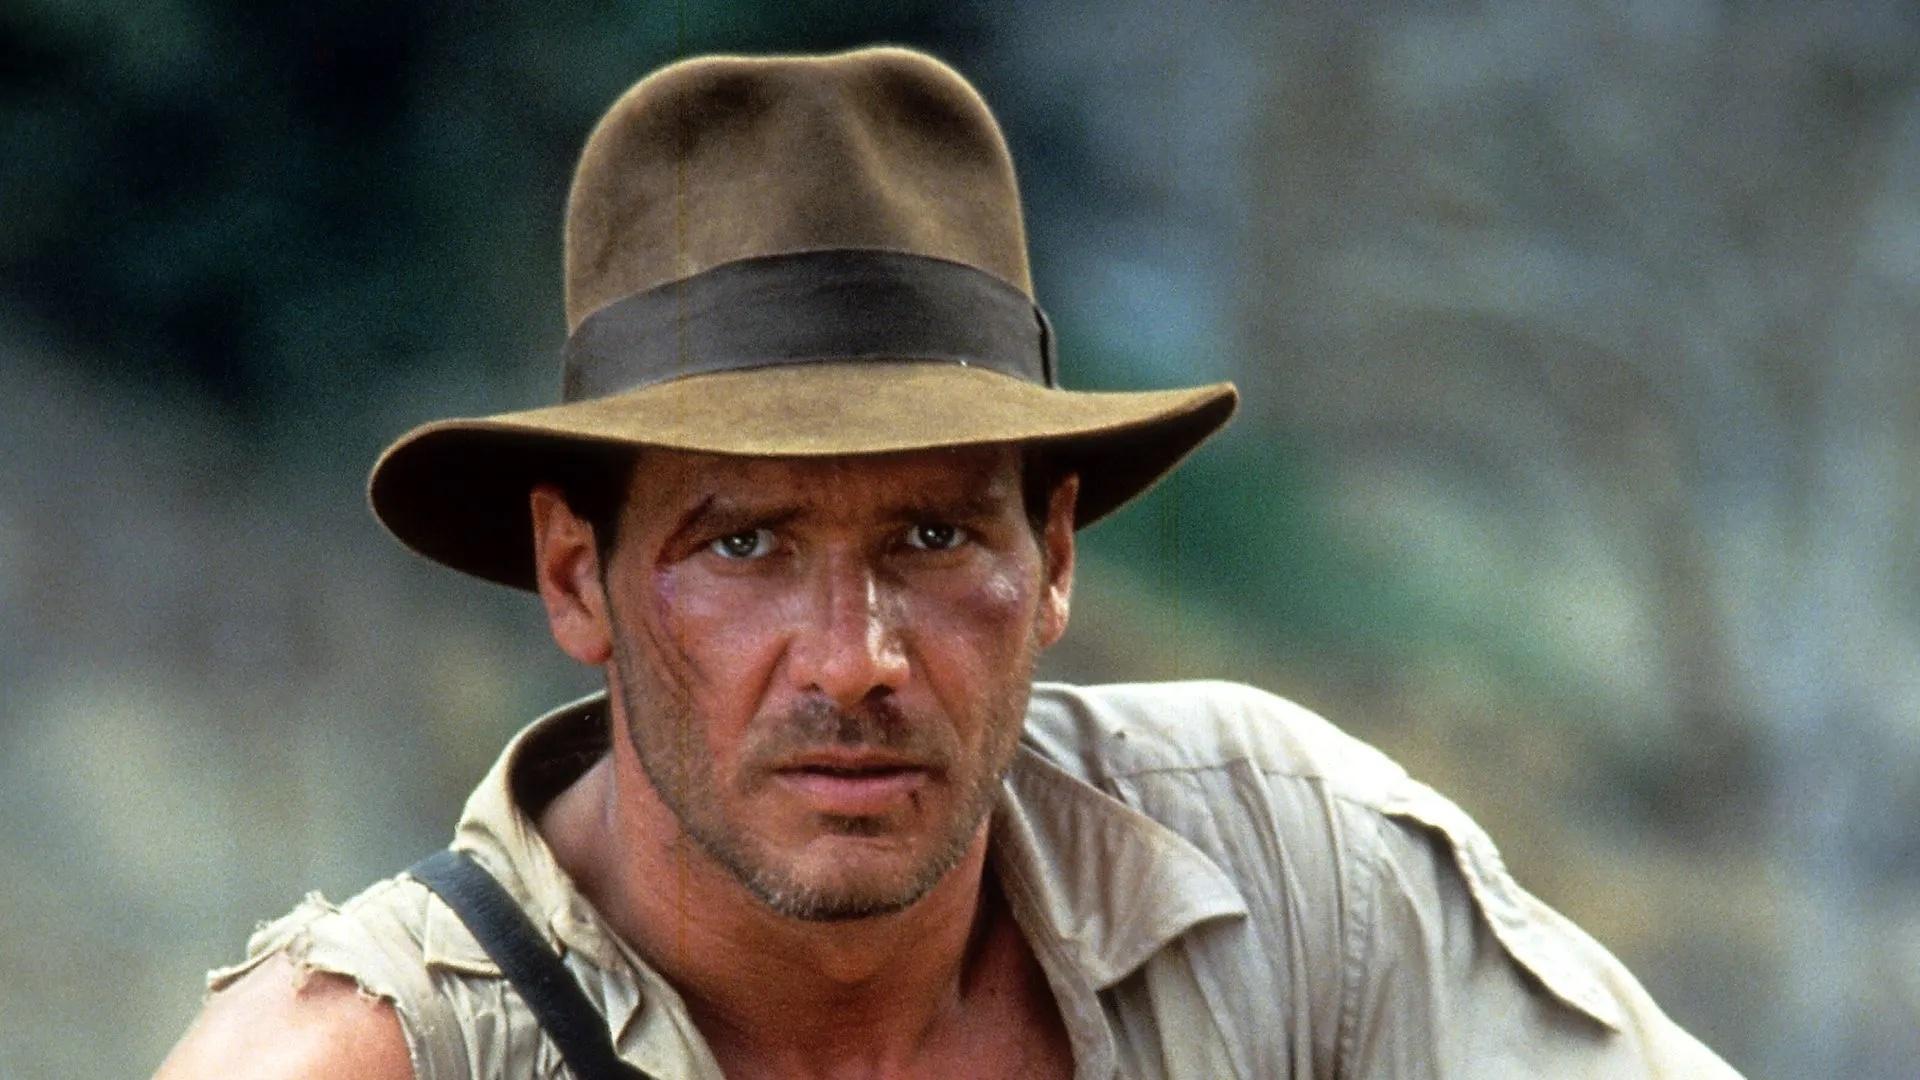 Harrison Ford está de volta à aventura em primeira foto oficial de Indiana  Jones 5 - NerdBunker